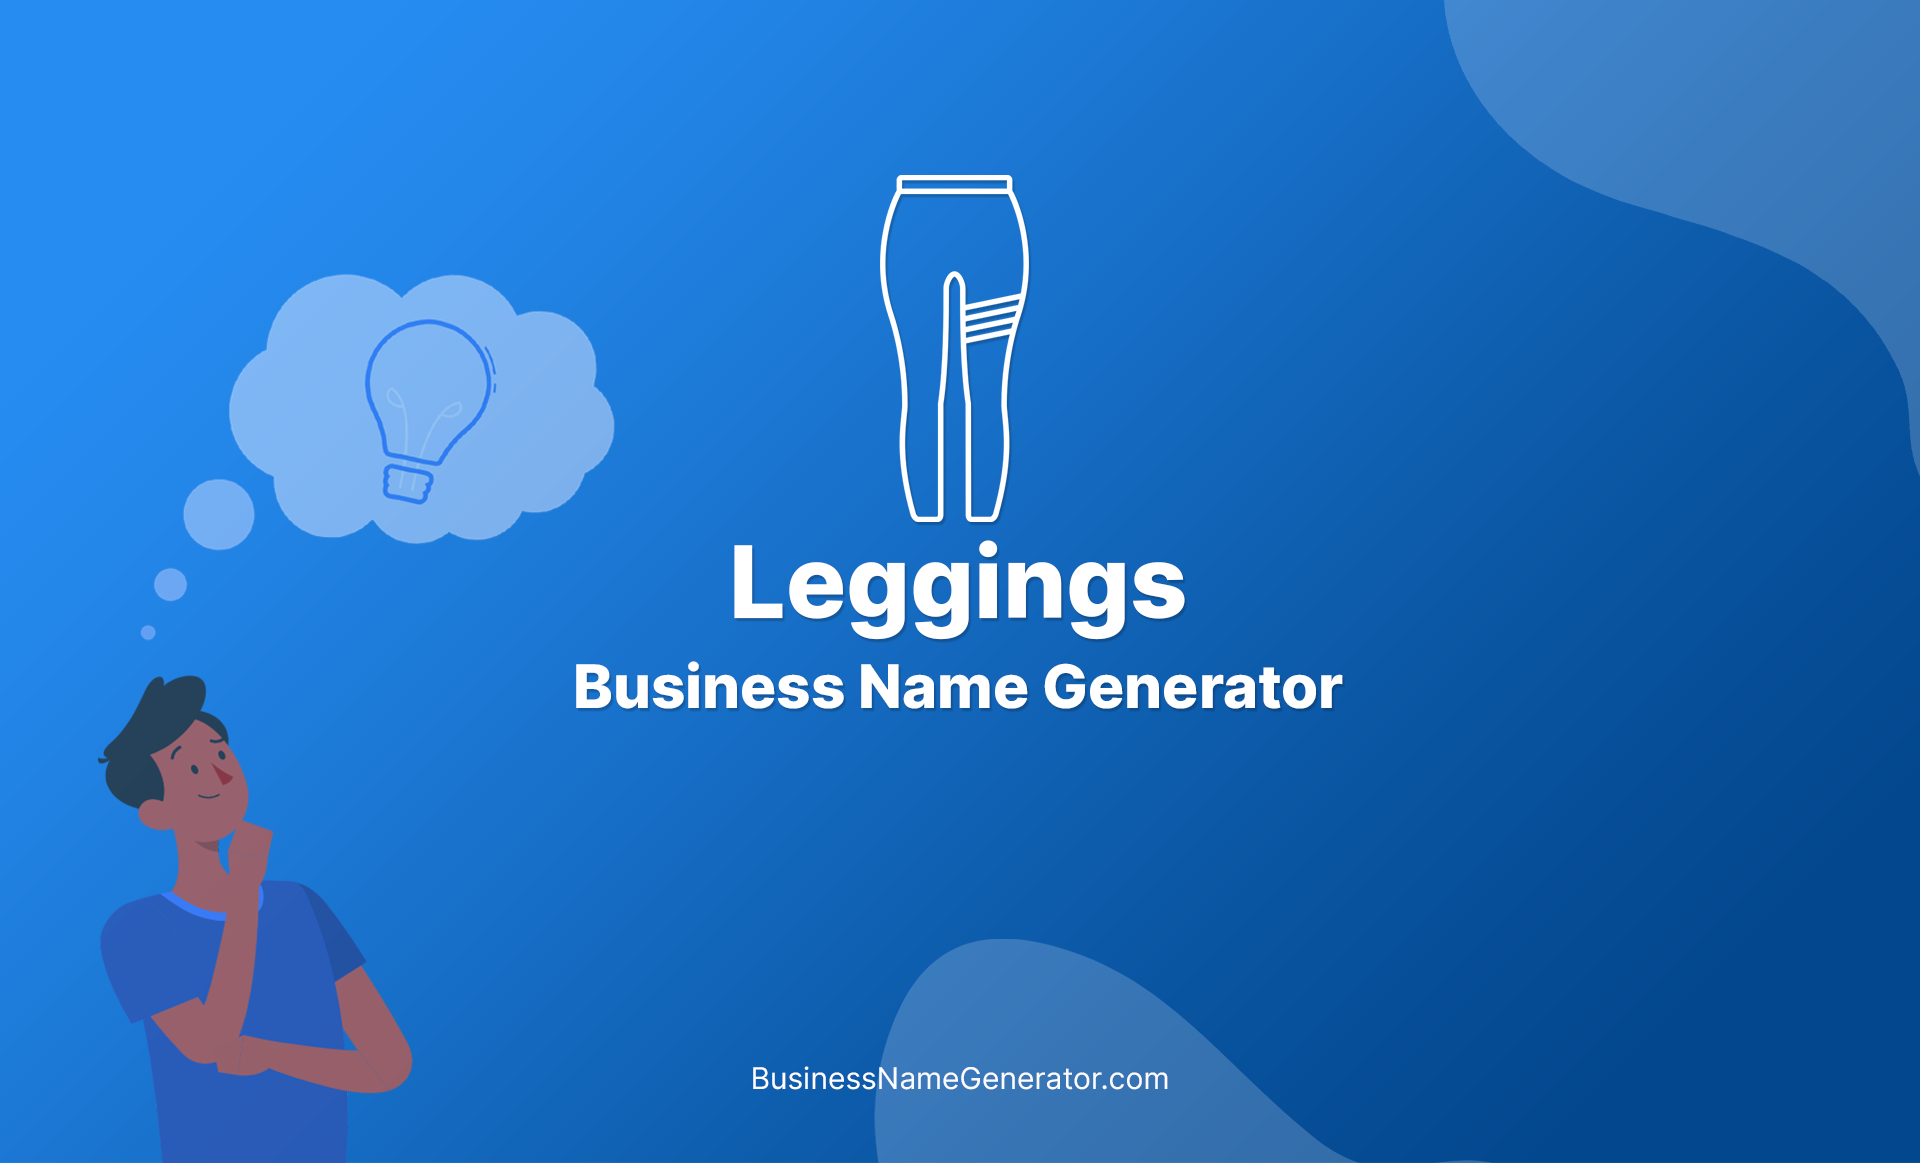 Leggings Business Name Generator